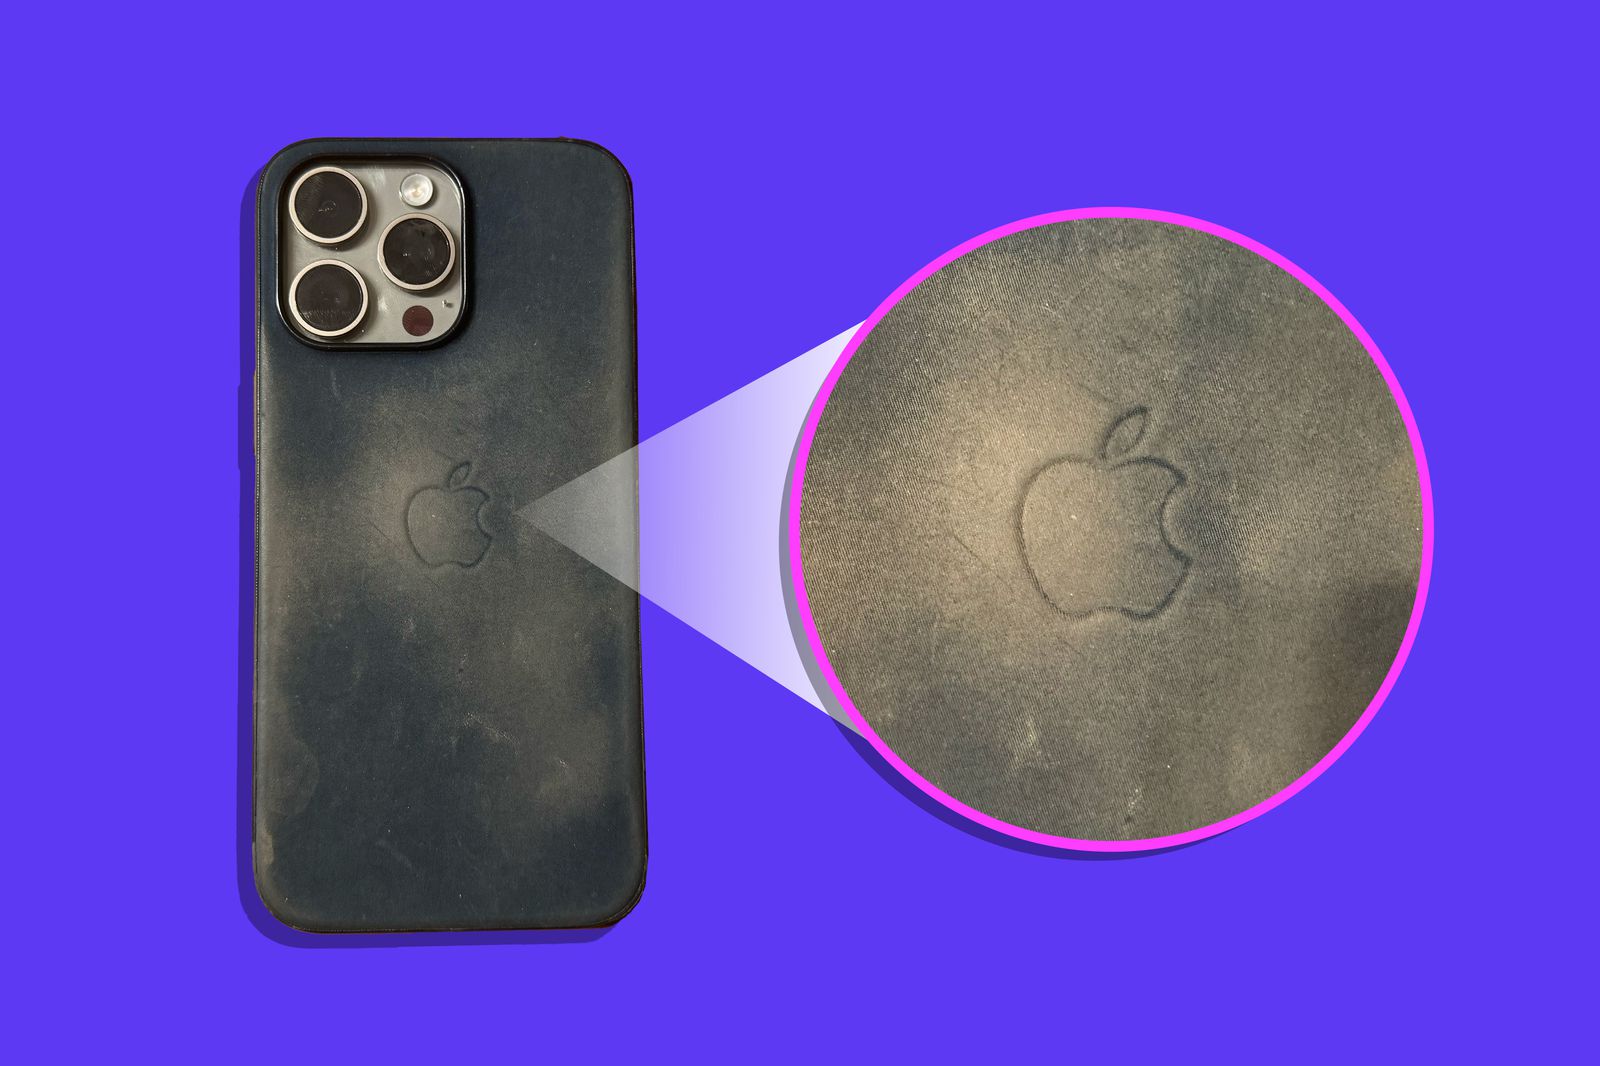 iPhoneislam.com से, एक ट्रिपल-कैमरा स्मार्टफोन, जो बैंगनी पृष्ठभूमि पर धूल भरे सेब के लोगो को ज़ूम करके दिखाता है, 12-18 अप्रैल के सप्ताह में समाचारों में हाइलाइट किया गया था।